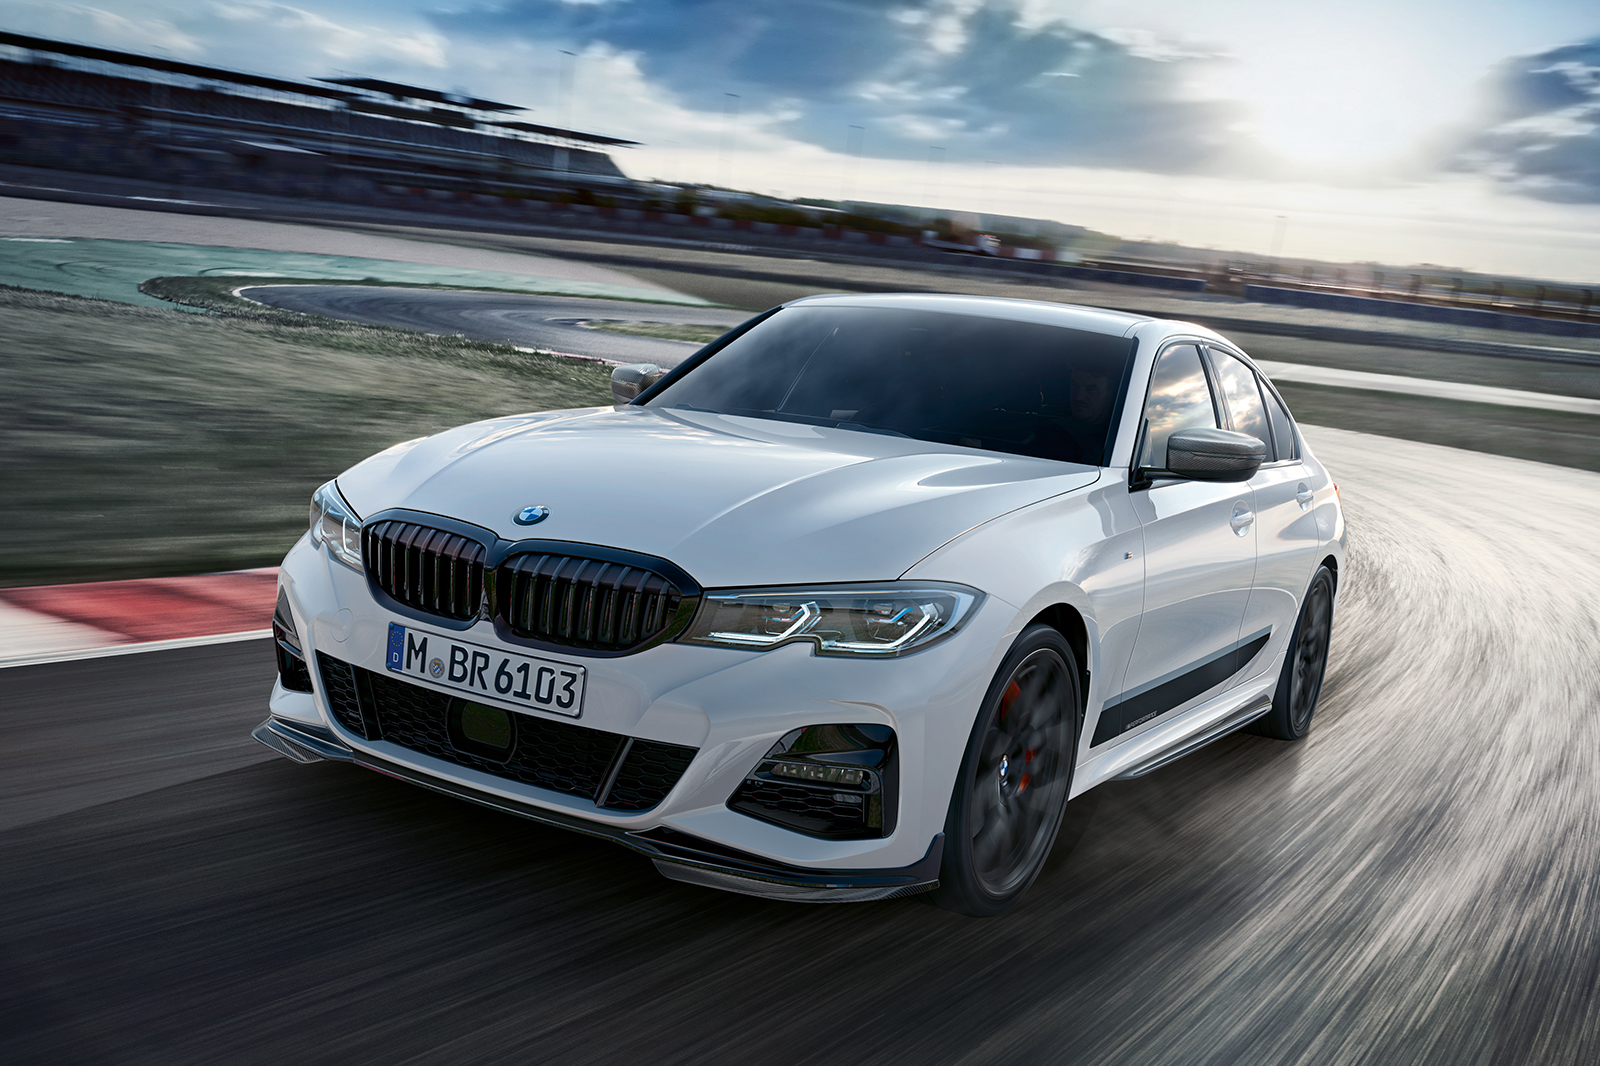 BMW reveals M Performance parts for G20 3 Series Autocar